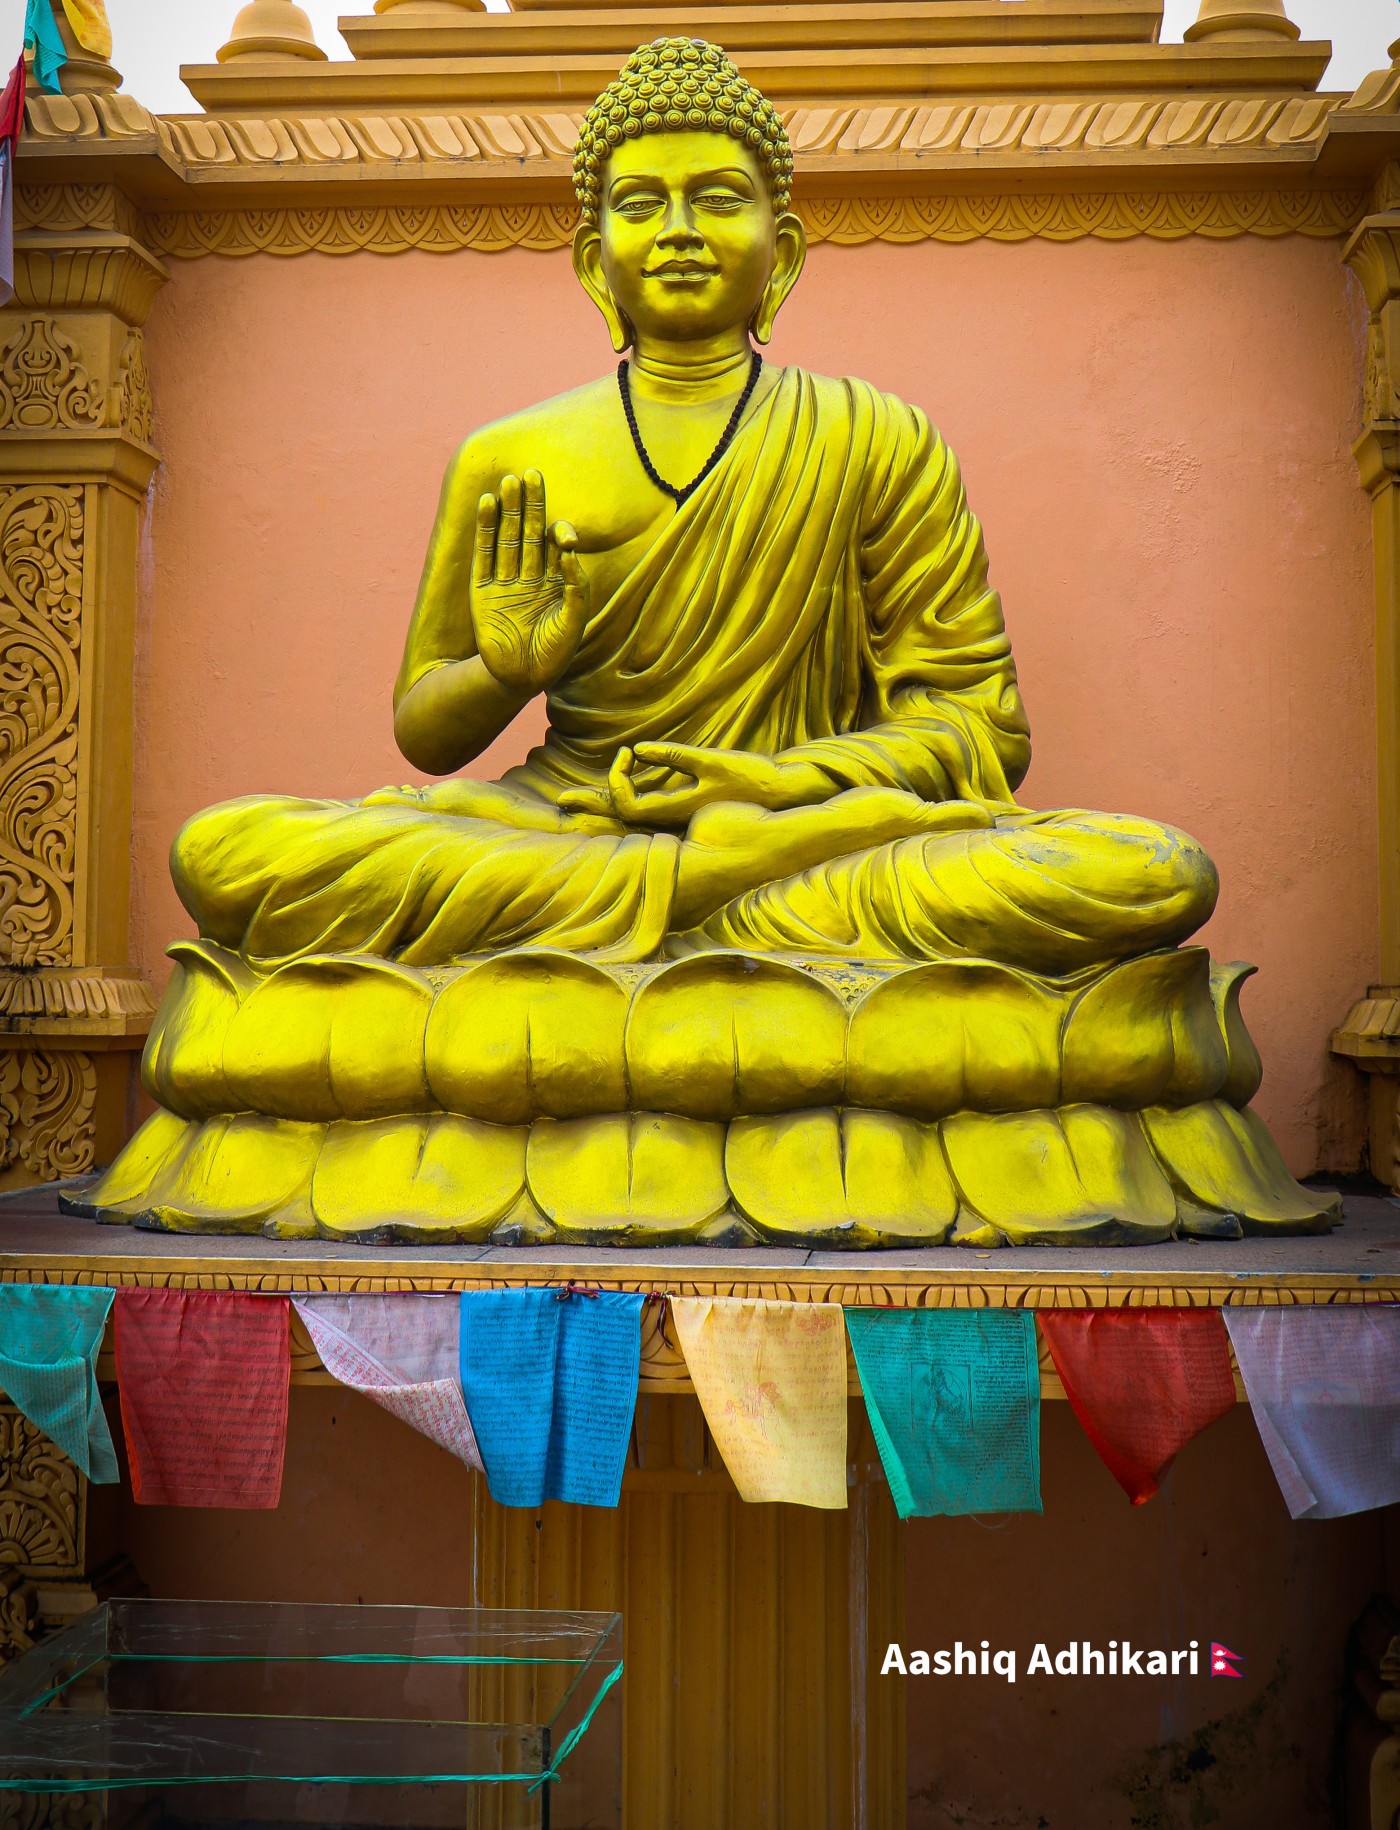 Beautiful Statue of Lord Budhha located in CG, Saswatdham.